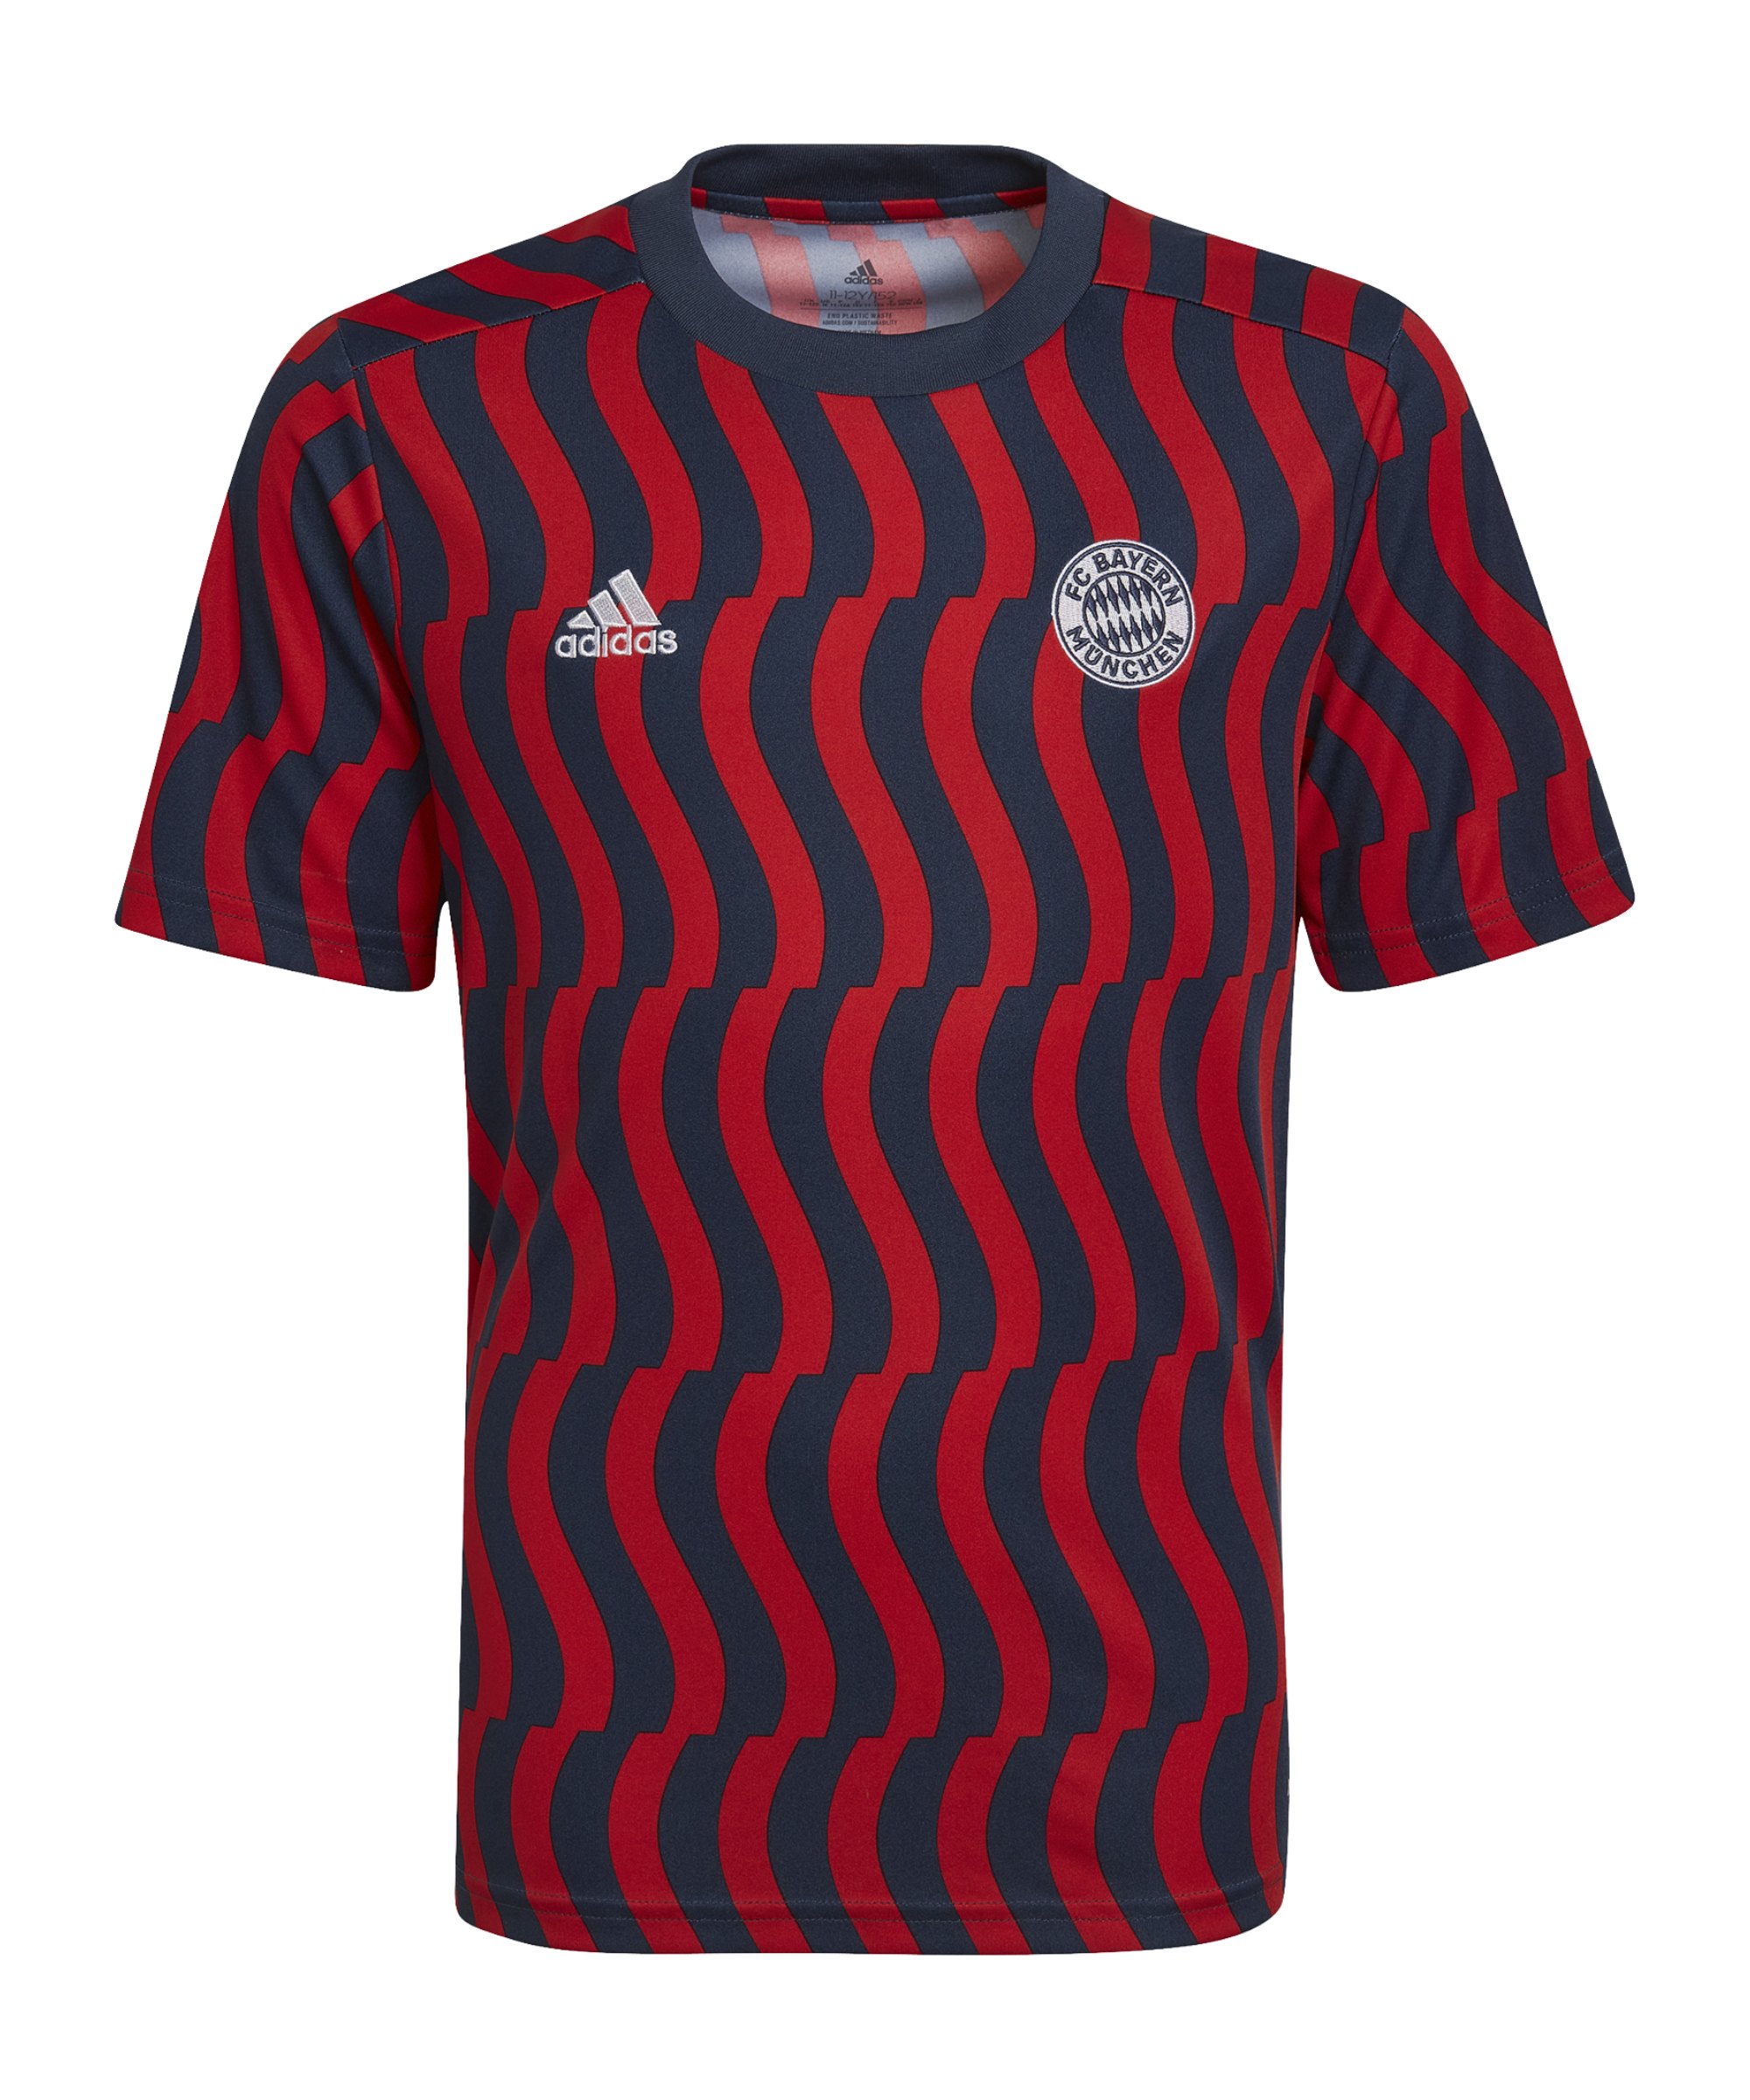 adidas FC Bayern München Prematch Shirt 2021/2022 Kids Blau Rot - blau